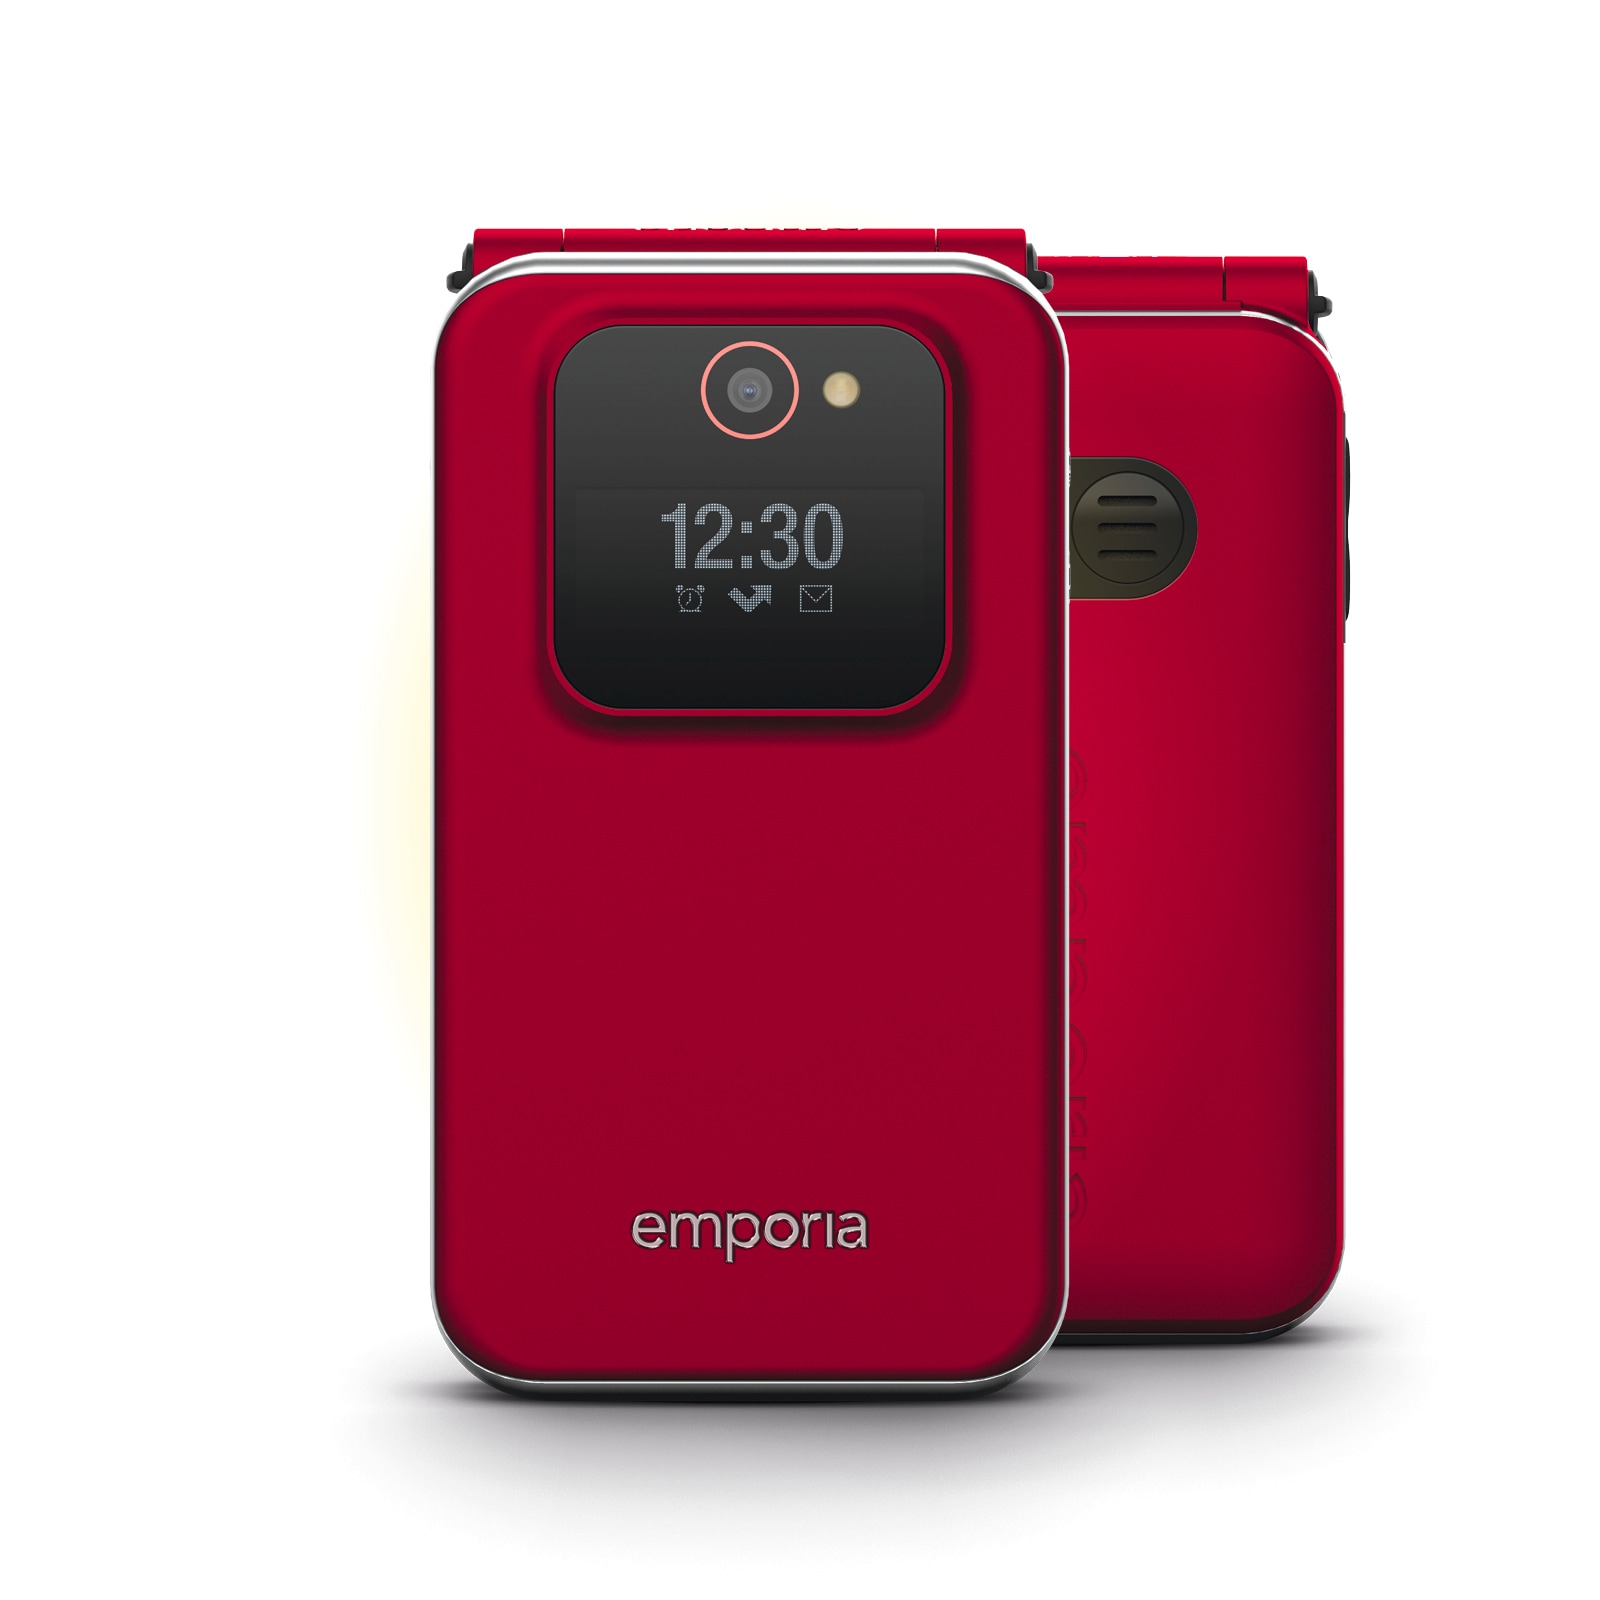 Smartphone »JOY V228-2G«, Rot, 7,1 cm/2,8 Zoll, 0,128 GB Speicherplatz